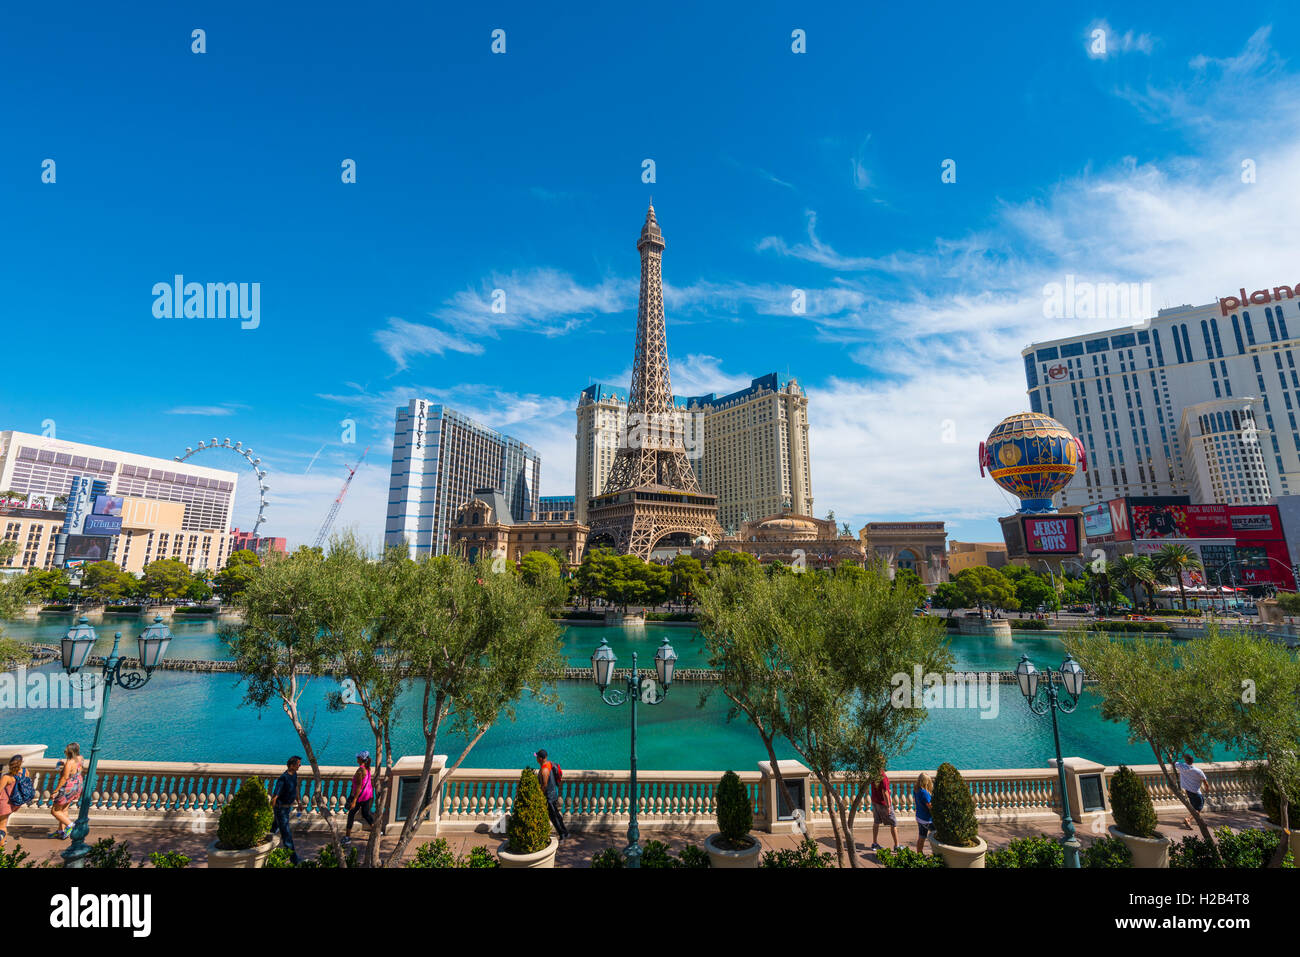 Réplique de la Tour Eiffel, Paris Hotel et le lac en face de l'hôtel Bellagio, Las Vegas, Nevada, USA Banque D'Images